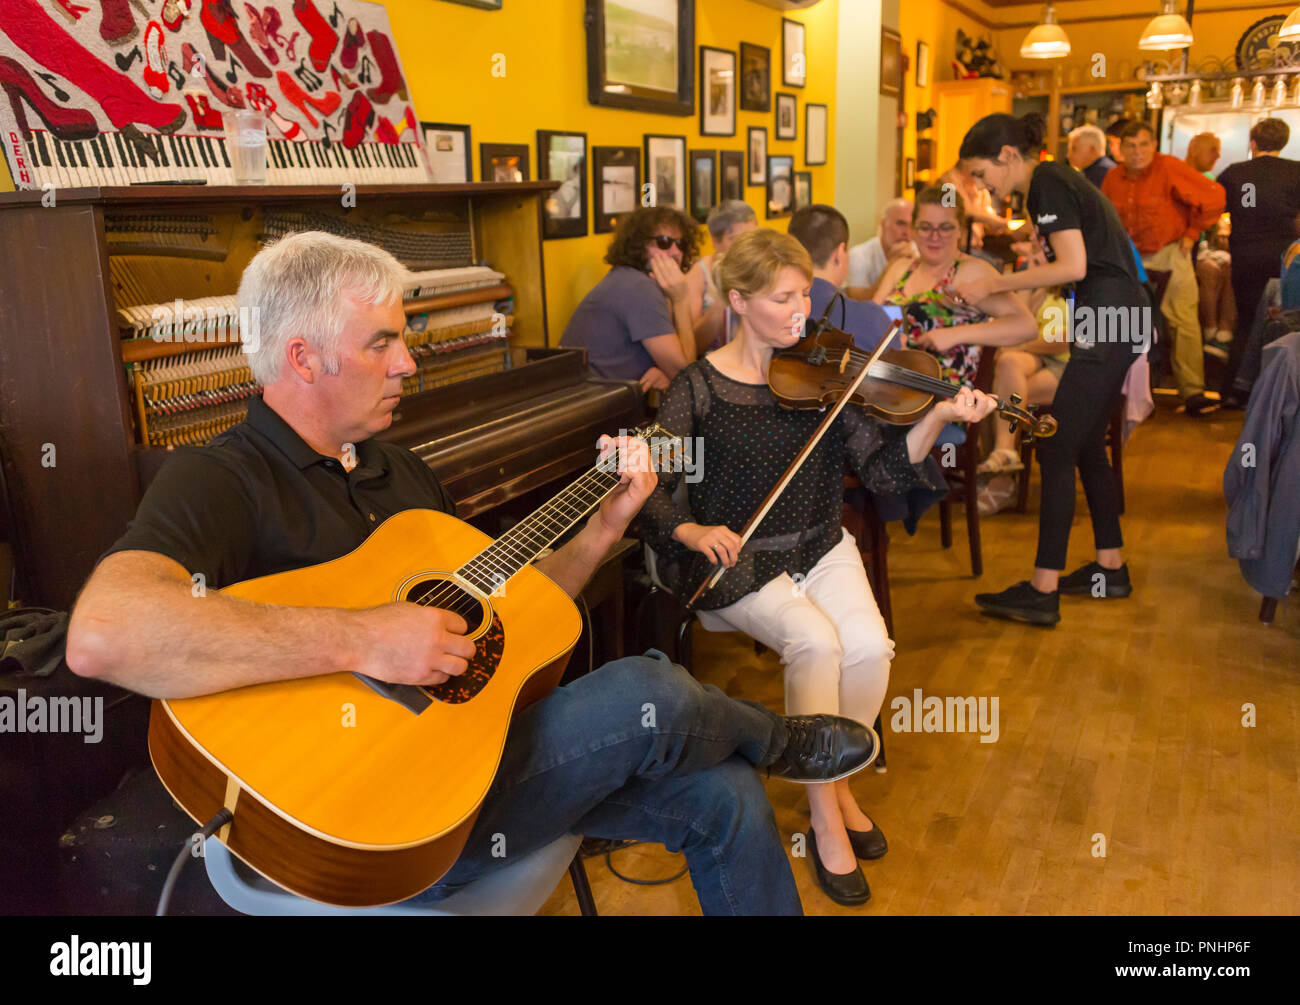 MABOU, île du Cap-Breton, Nouvelle-Écosse, Canada - la musique folklorique à la chaussure rouge Pub. Banque D'Images